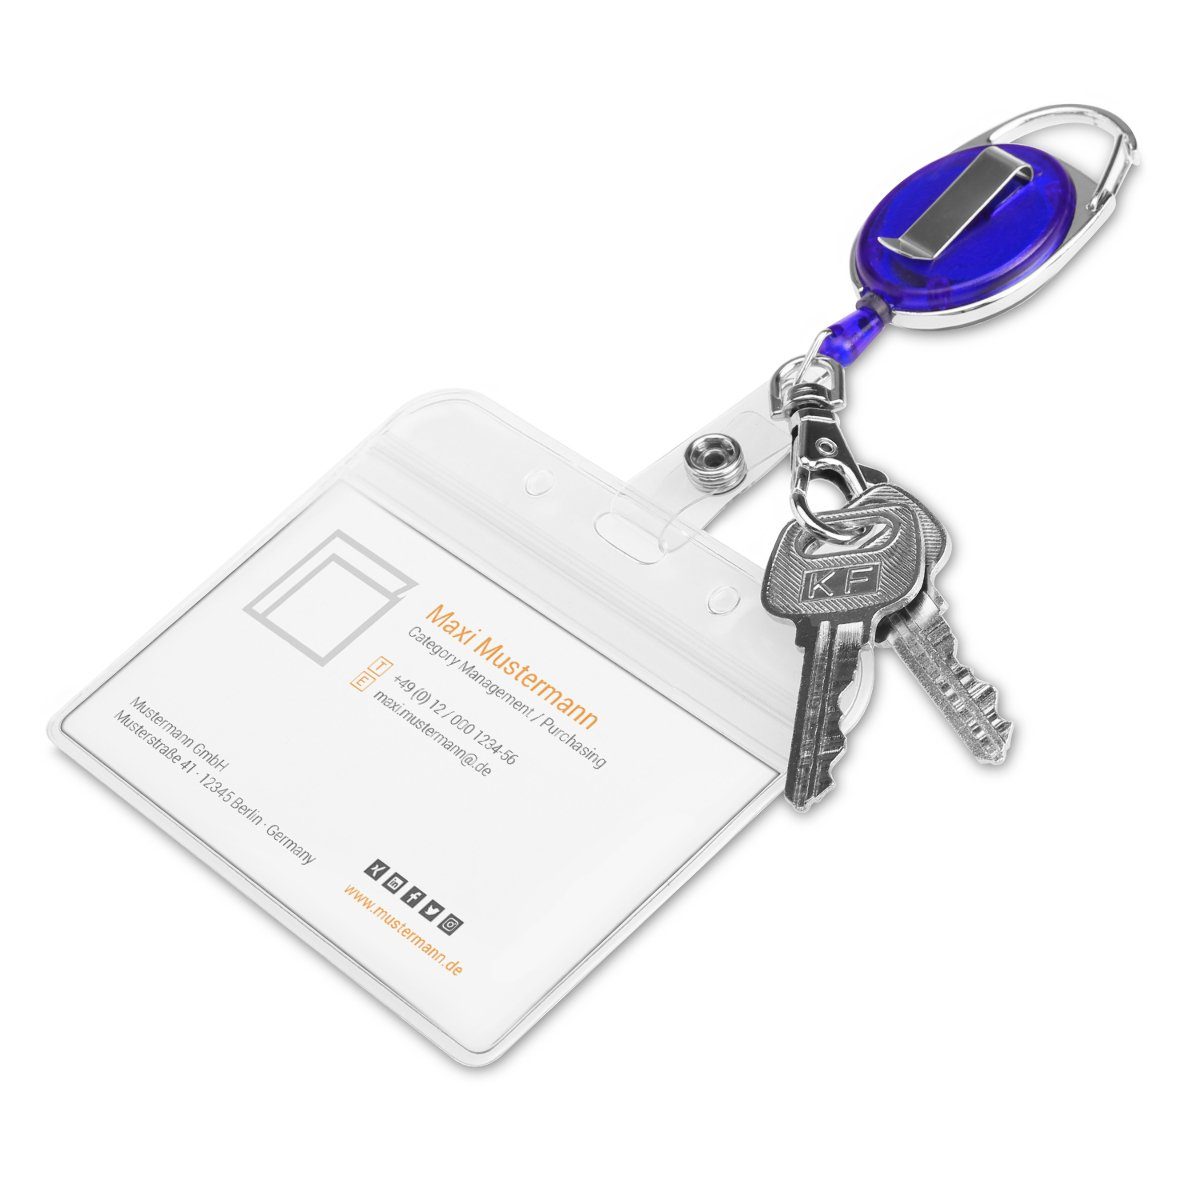 kwmobile Schlüsselanhänger 2x Jojo mit - Schlüsselanhänger Ausweis ausziehbar - Kartenhalter Clip Blau